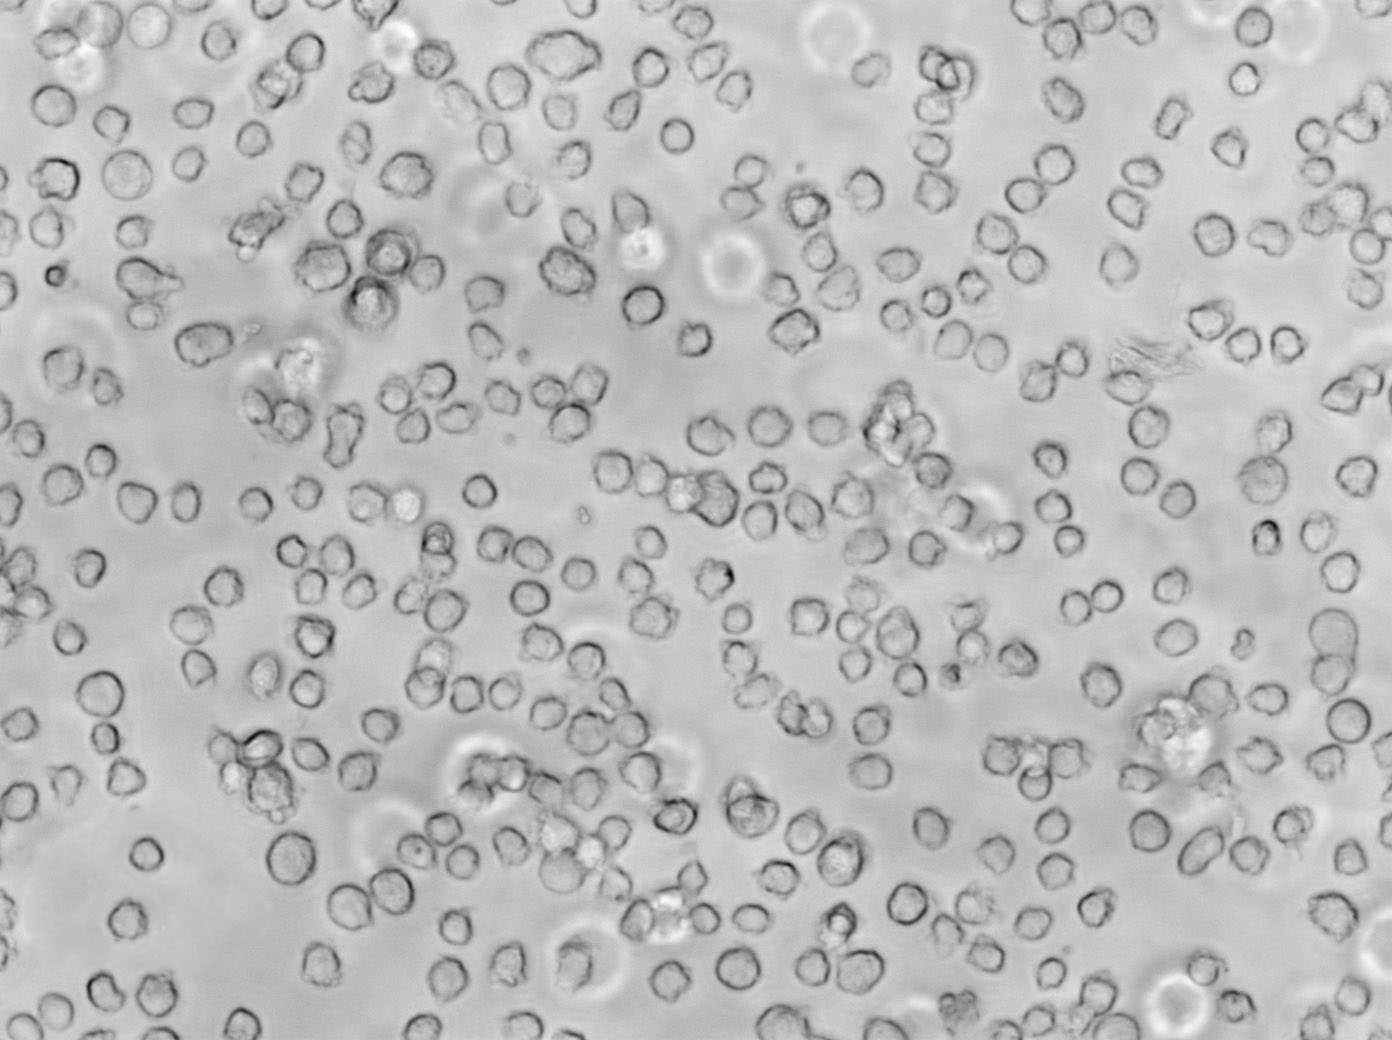 TF-1 Cell|人红系白血病细胞